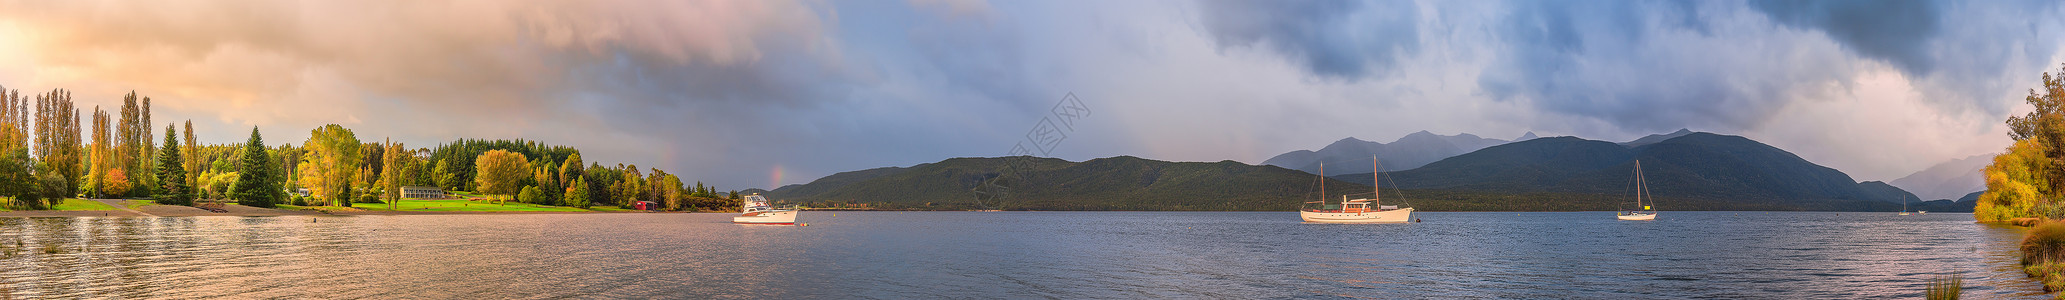 蒂阿瑙湖新西兰清晨的山川湖泊全景图背景